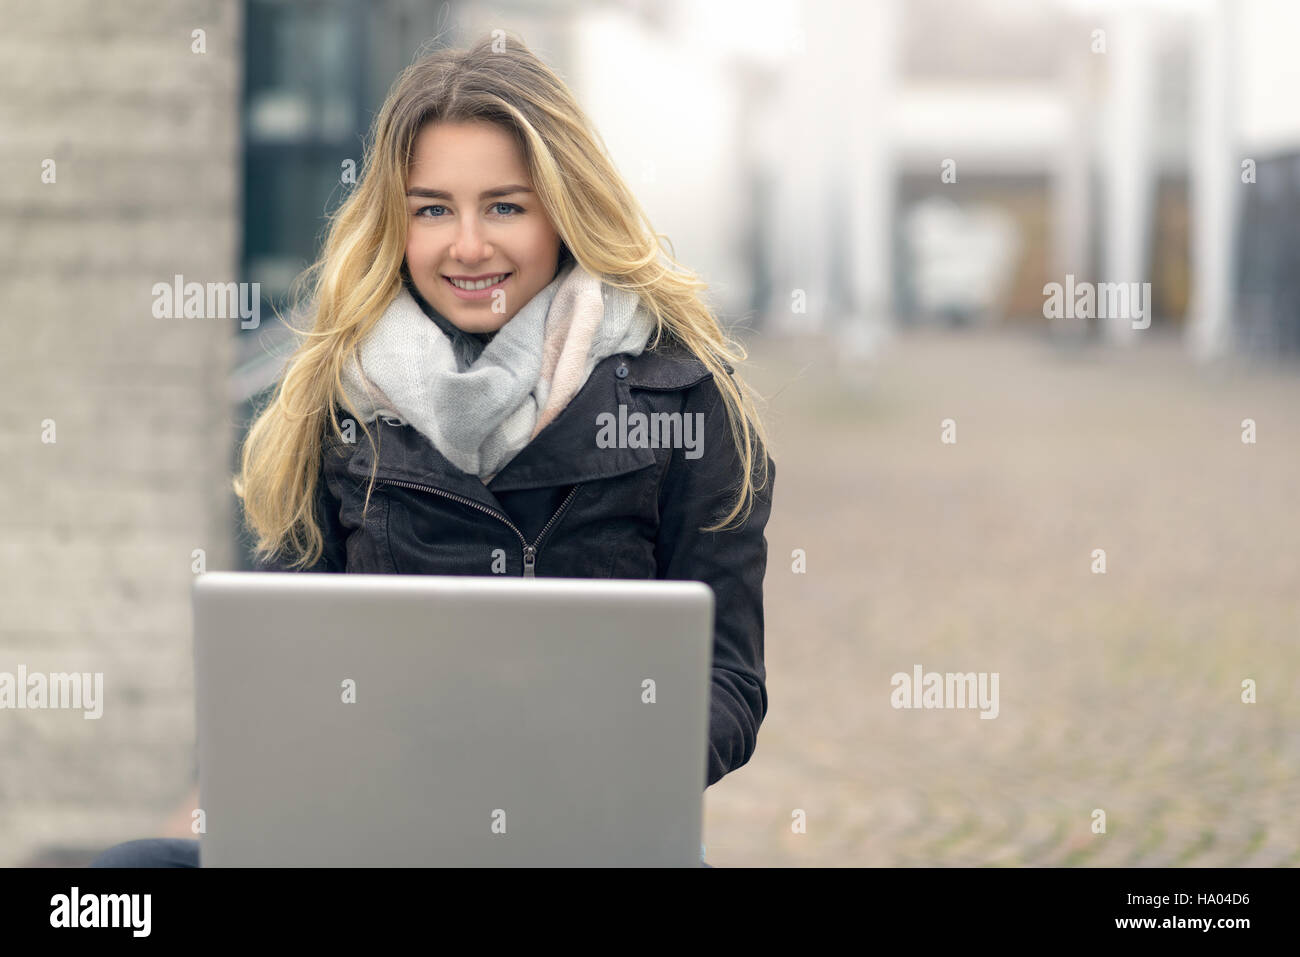 Jeune femme blonde travaille sur son ordinateur portable tout en étant assis sur un banc à l'extérieur, l'éducation et l'étude concept Banque D'Images